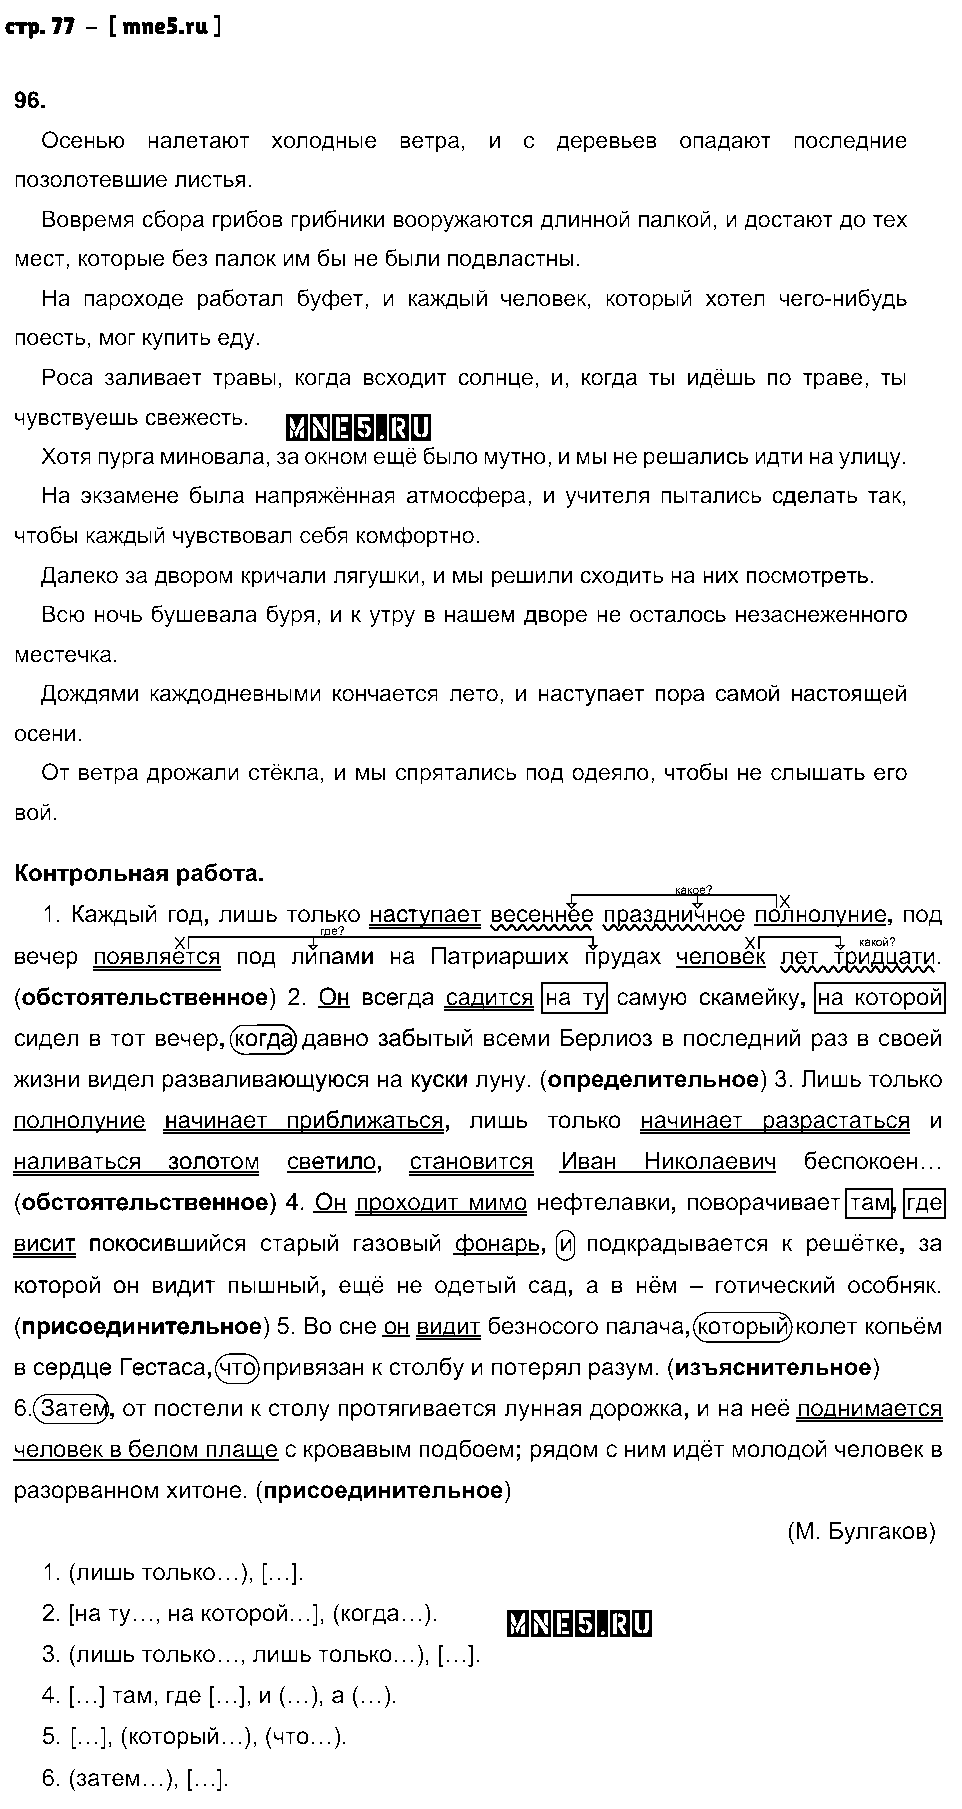 ГДЗ Русский язык 9 класс - стр. 77